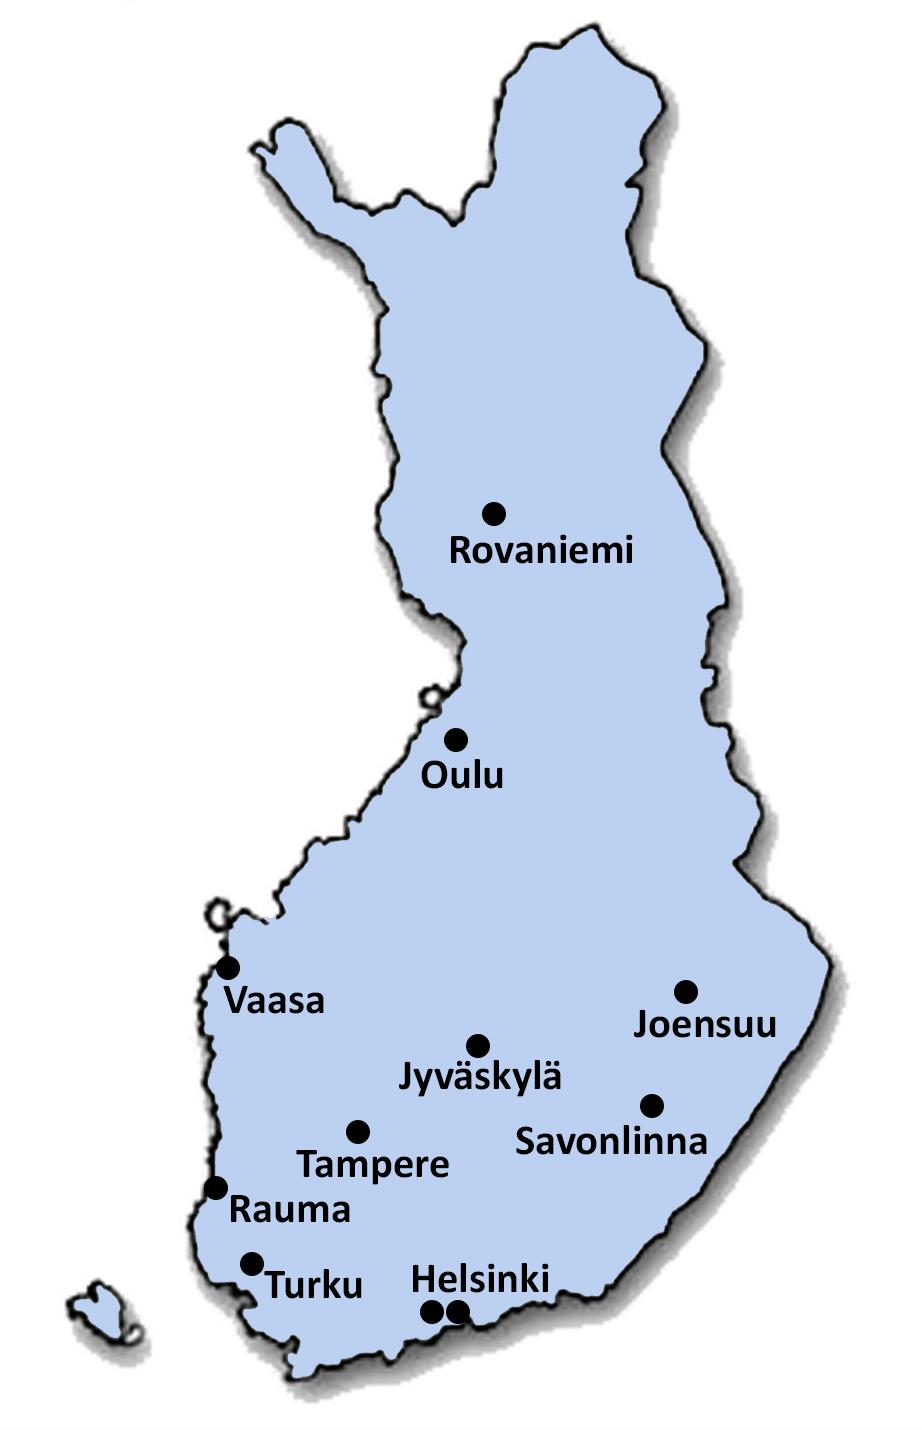 HARJOITTELUKOULUT 1. Lappi: Rovaniemi 2. Pohjois-Suomi: Oulu 3. Länsi- ja Sisä-Suomi: Jyväskylä, Tampere ja Vaasa 4.